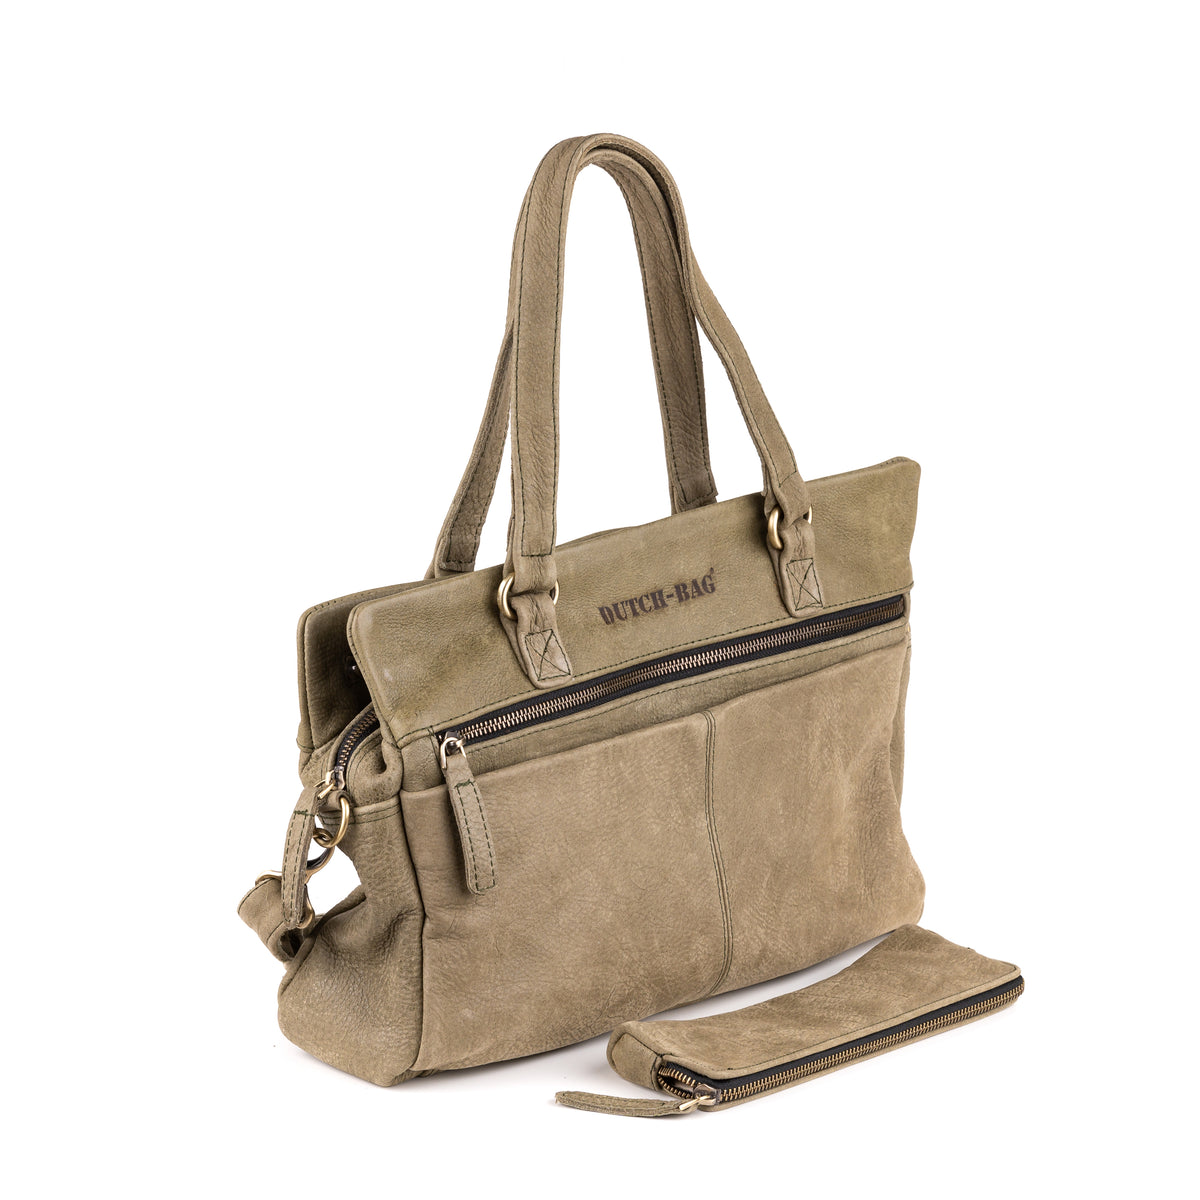 Arnhem Ladies Handbag Leather Taupe - Kenya leather